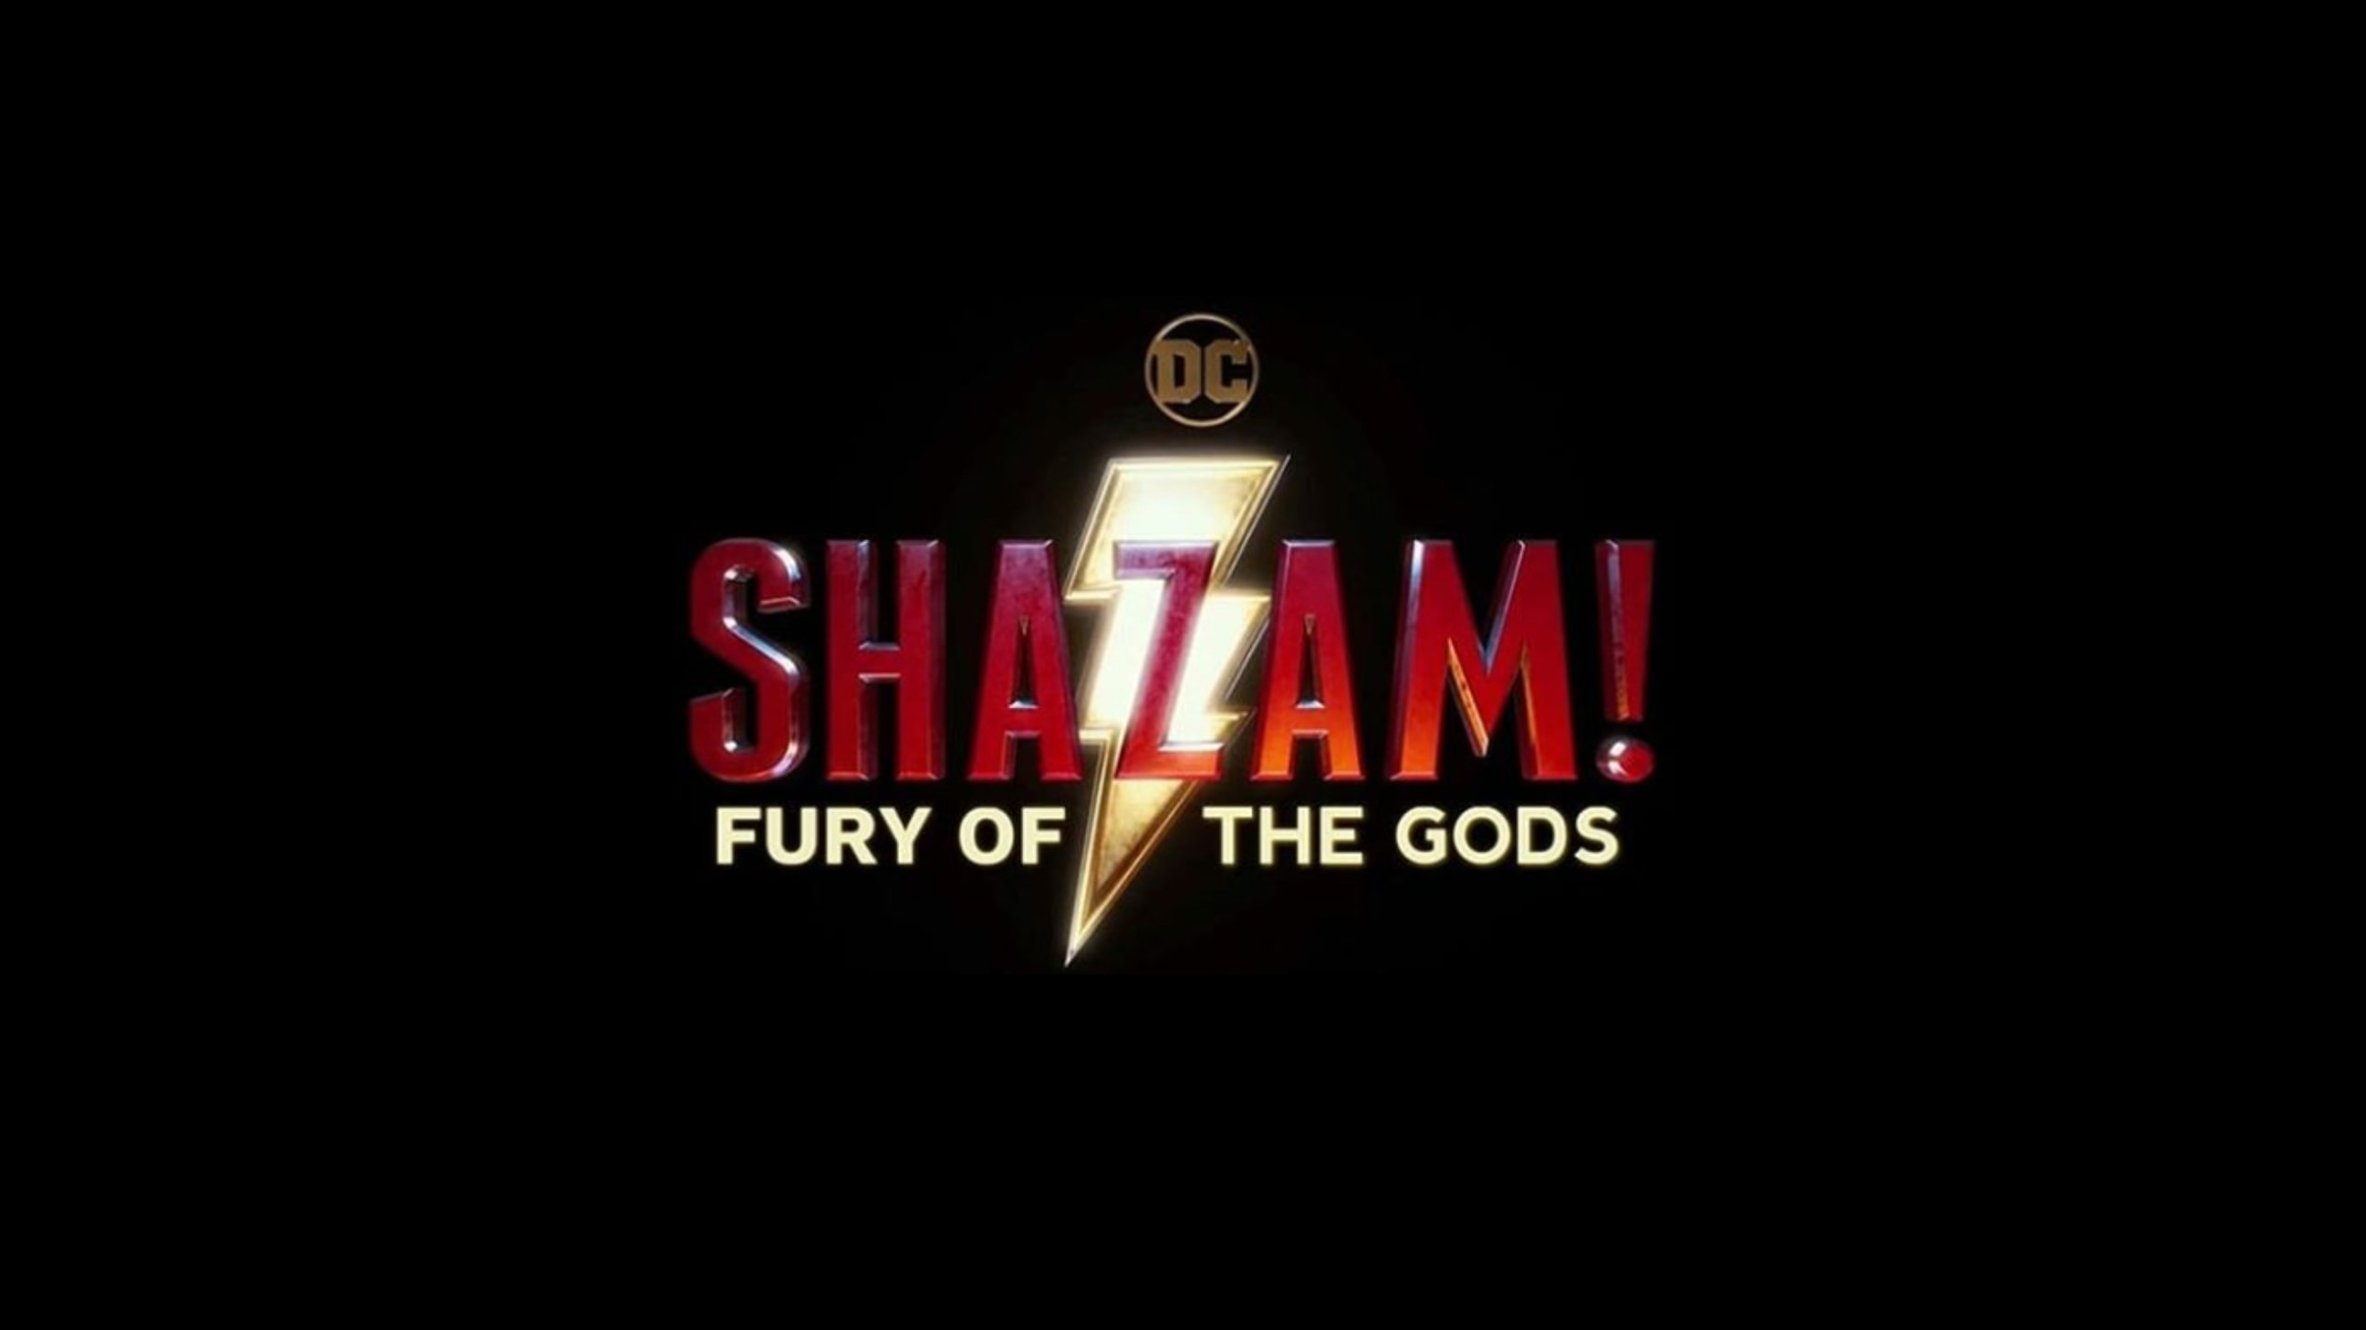 RECREATING GREECE IN ATLANTA Final 2 Scenes of DC's SHAZAM 2